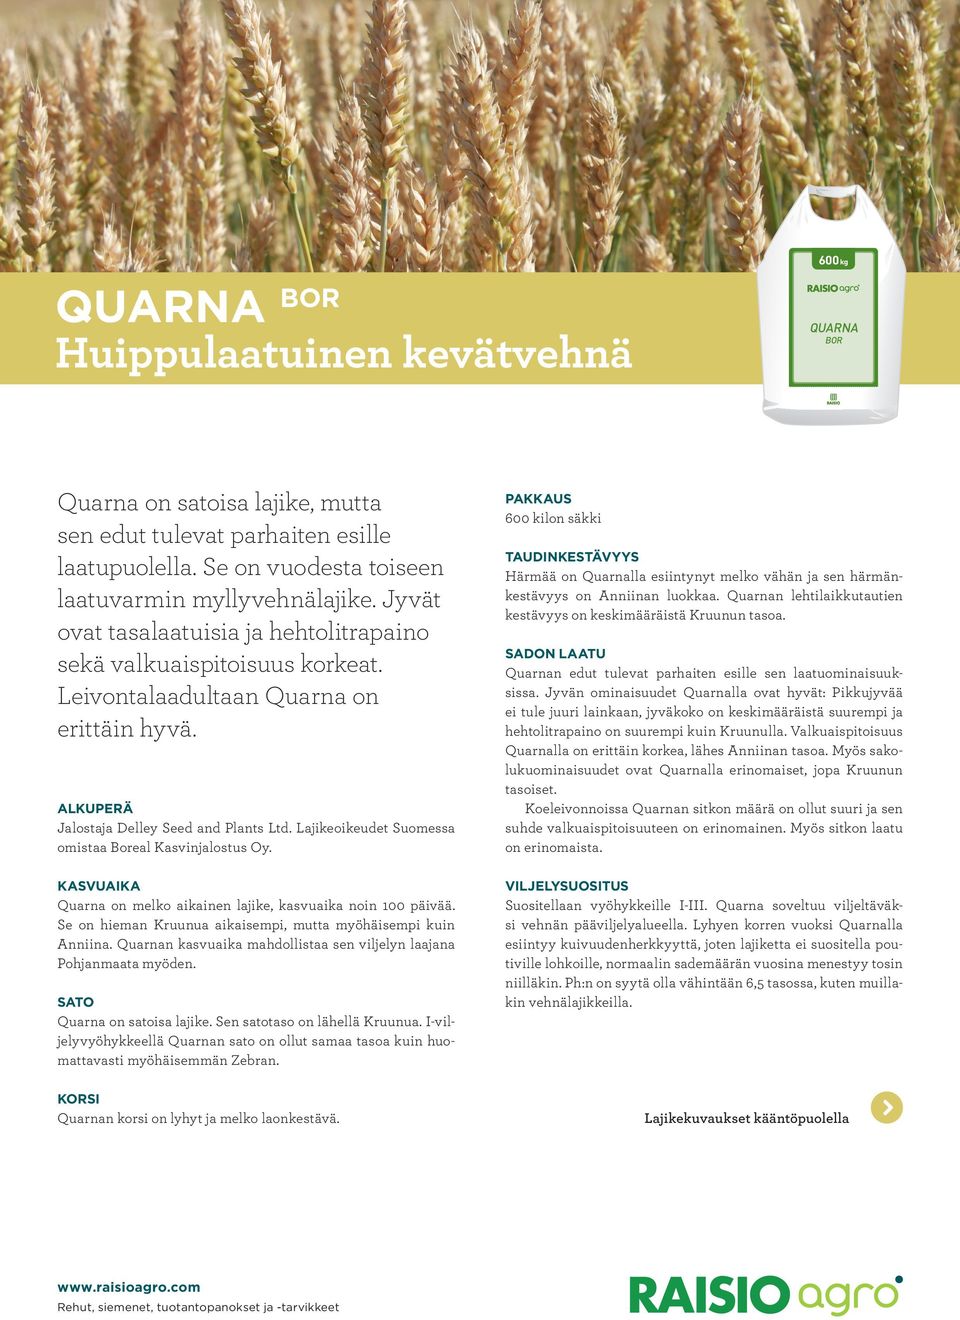 Lajikeoikeudet Suomessa omistaa Boreal Kasvinjalostus Oy. Quarna on melko aikainen lajike, kasvuaika noin 100 päivää. Se on hieman Kruunua aikaisempi, mutta myöhäisempi kuin Anniina.